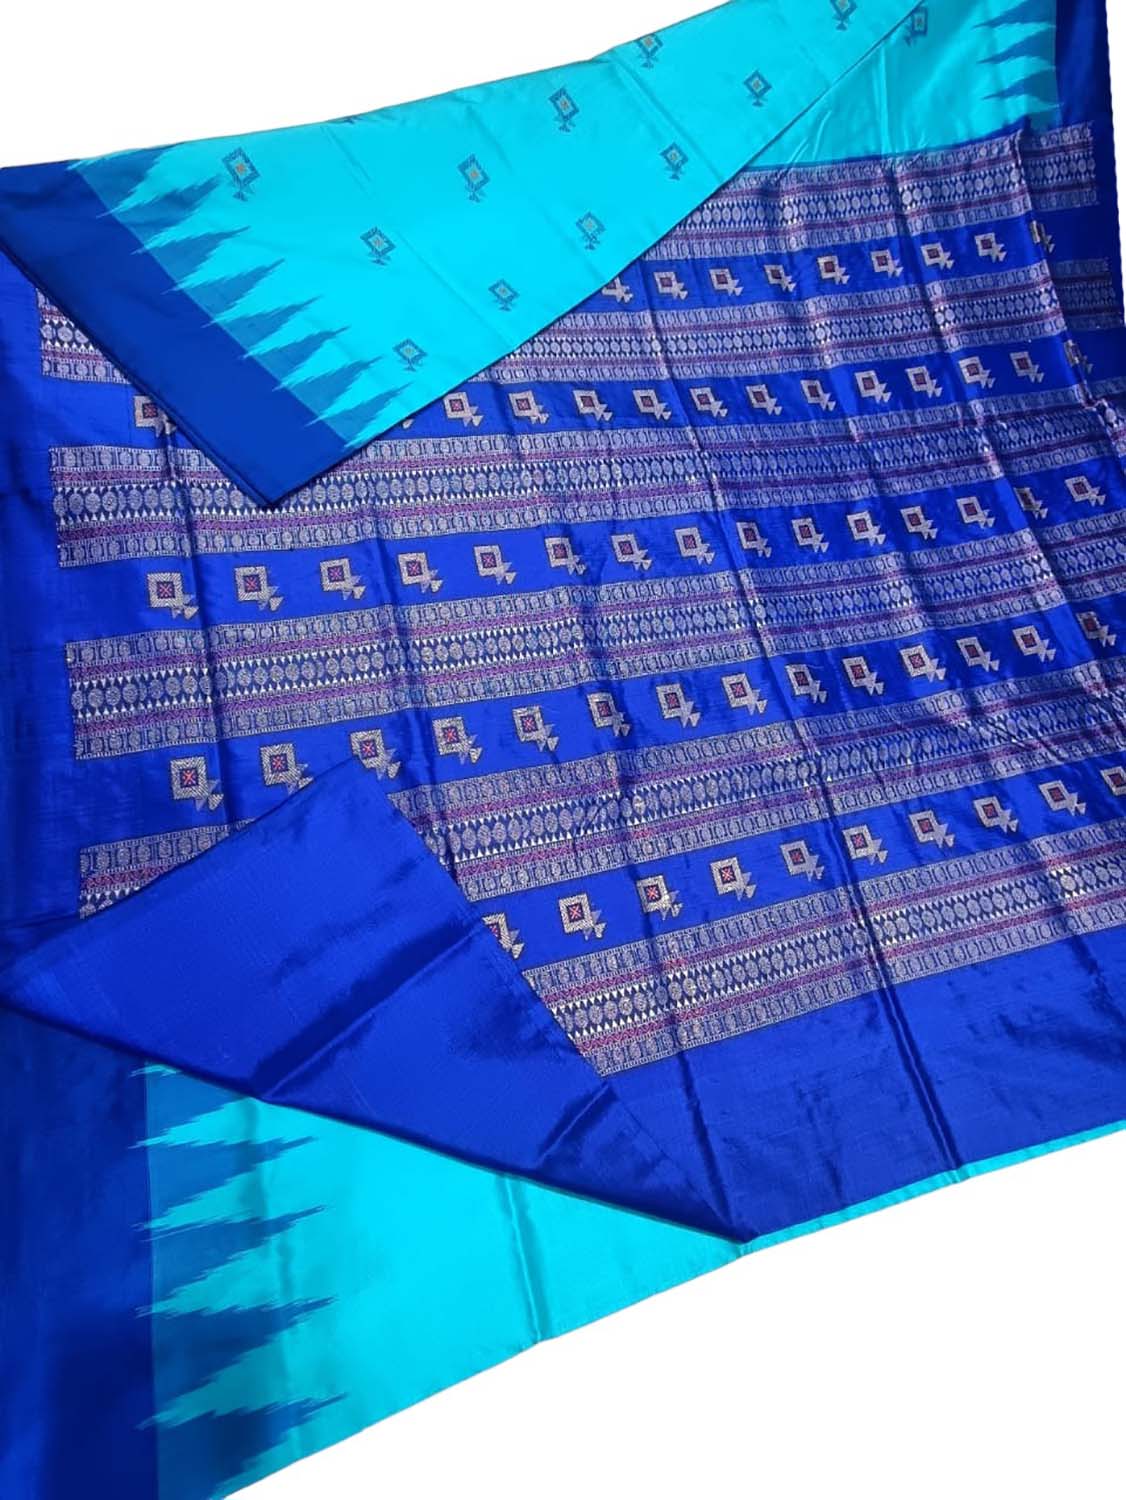 Stunning Blue Handloom Ikat Silk Saree - Authentic Sambalpuri Design - Luxurion World